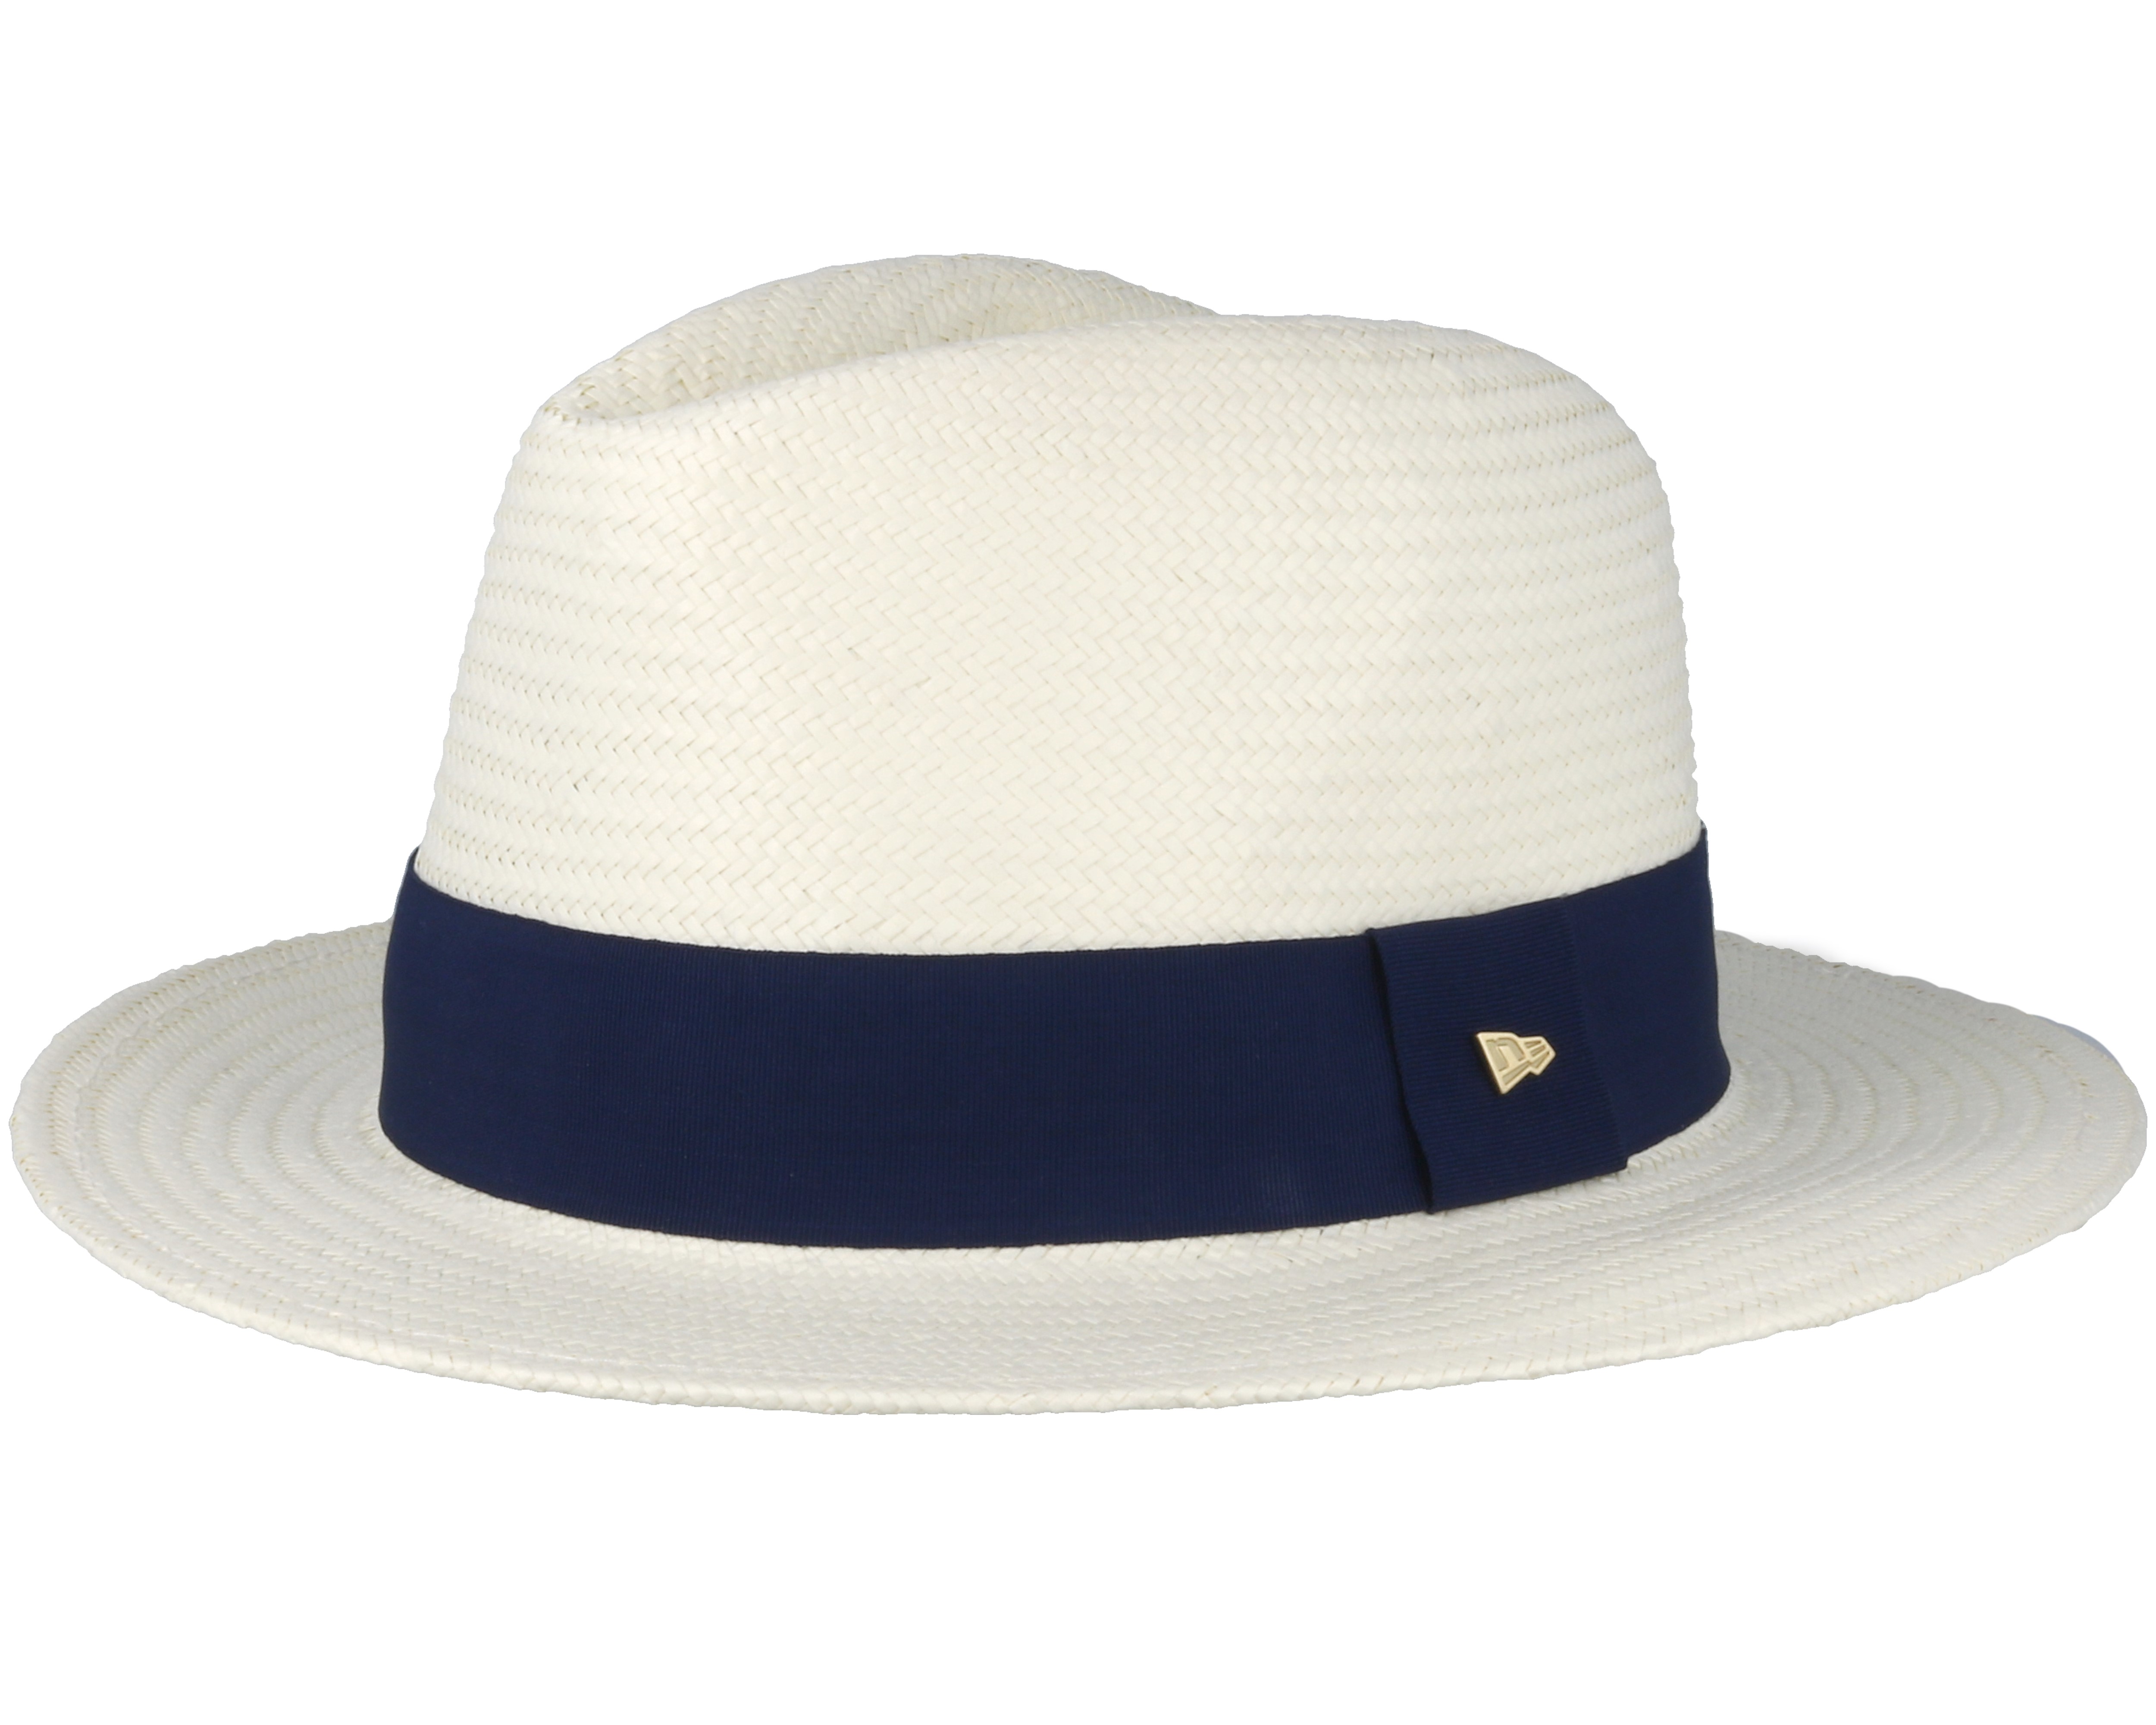 bevestig alstublieft Gelijkwaardig bevroren Ryder Cup Panama White Hat - New Era Hoed | Hatstore.nl